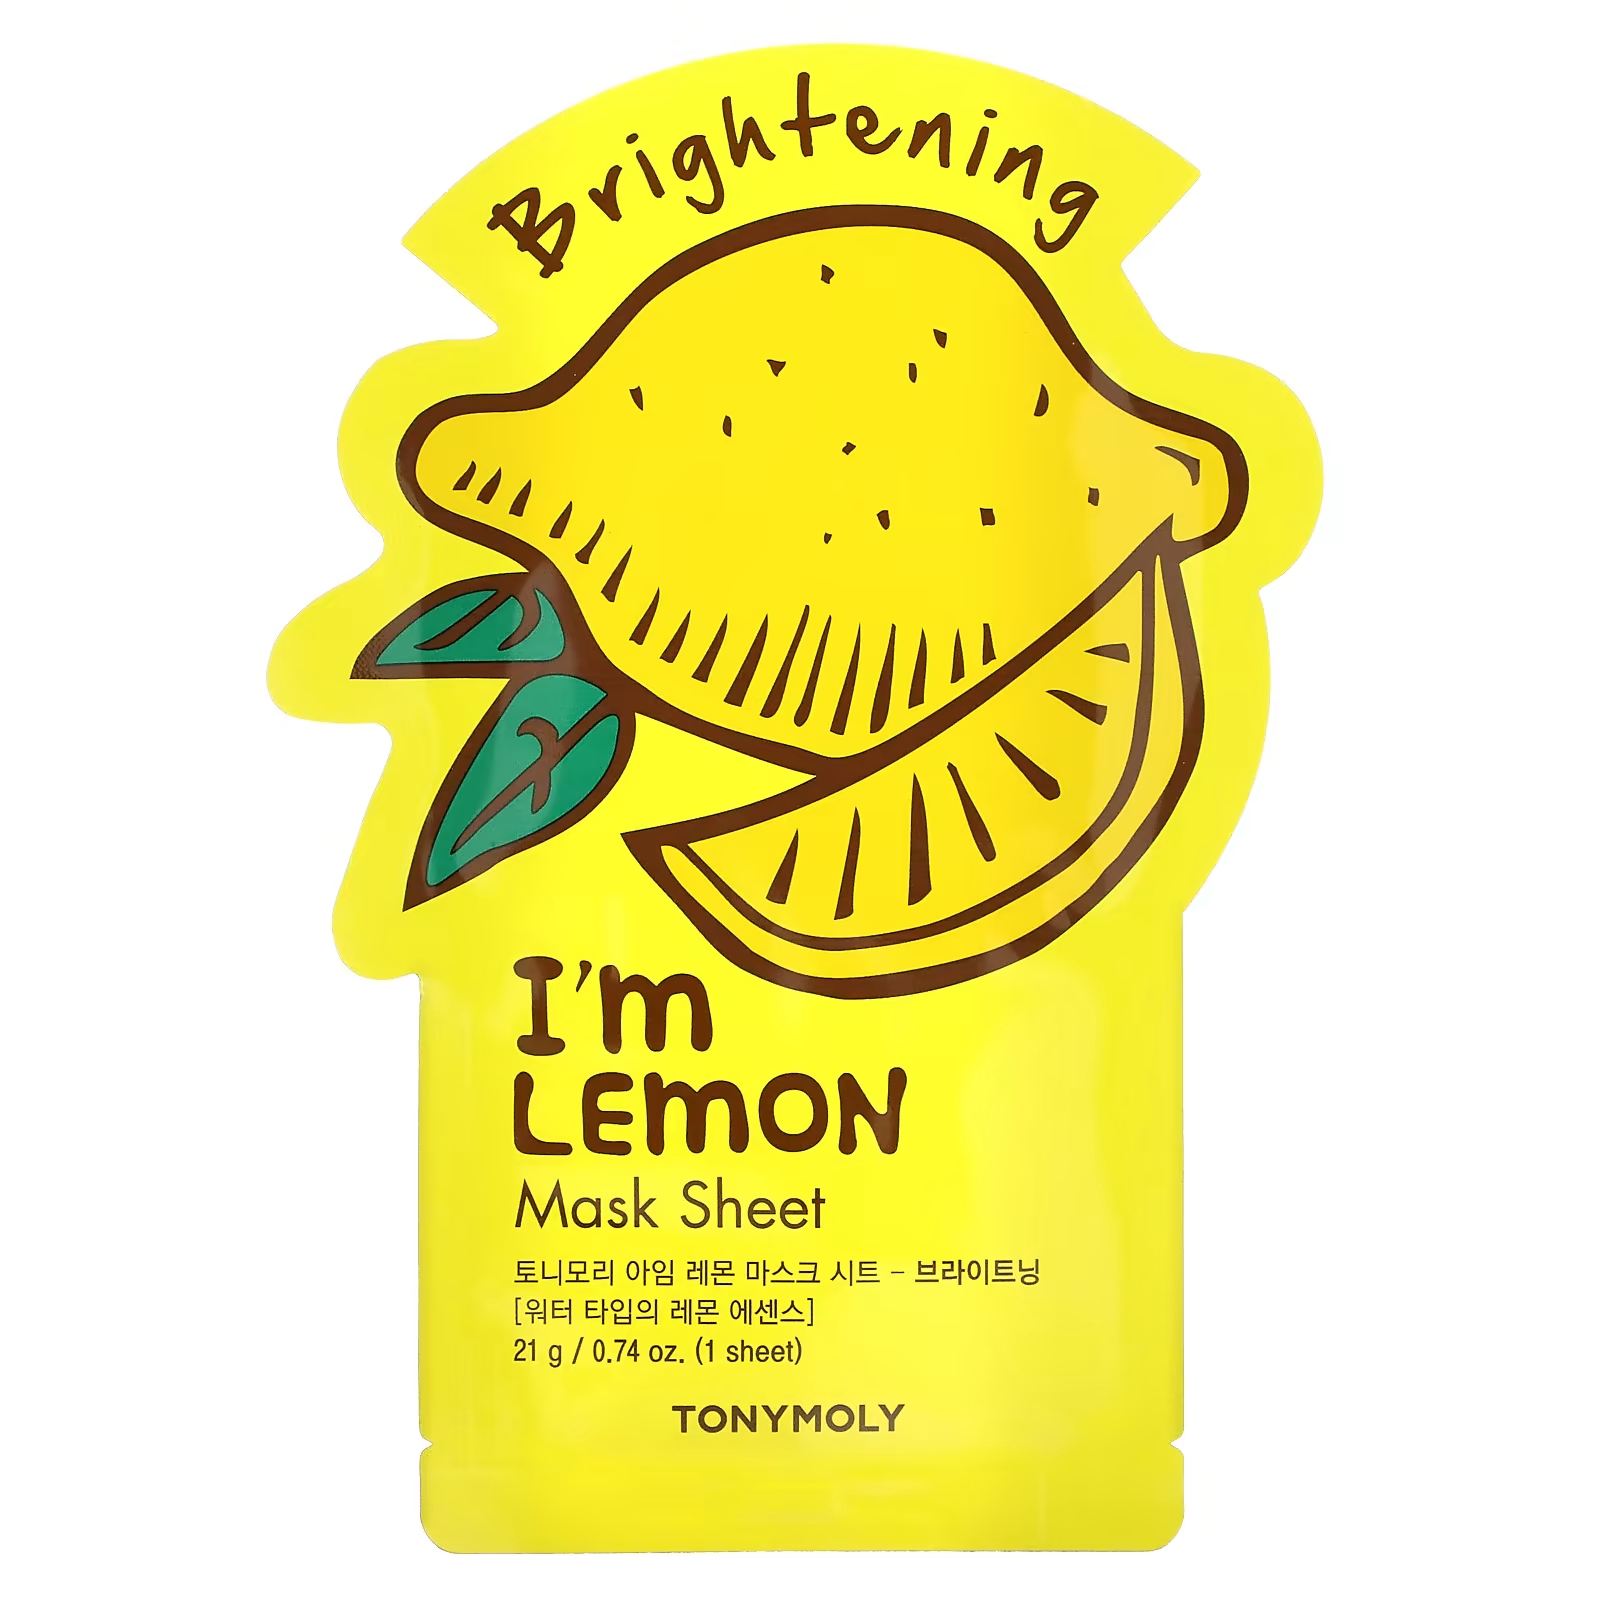 Tony Moly I'm Lemon Осветляющая косметическая маска, 1 шт., 0,74 унции (21 г) tony moly i m lemon осветляющая косметическая маска 1 шт 0 74 унции 21 г